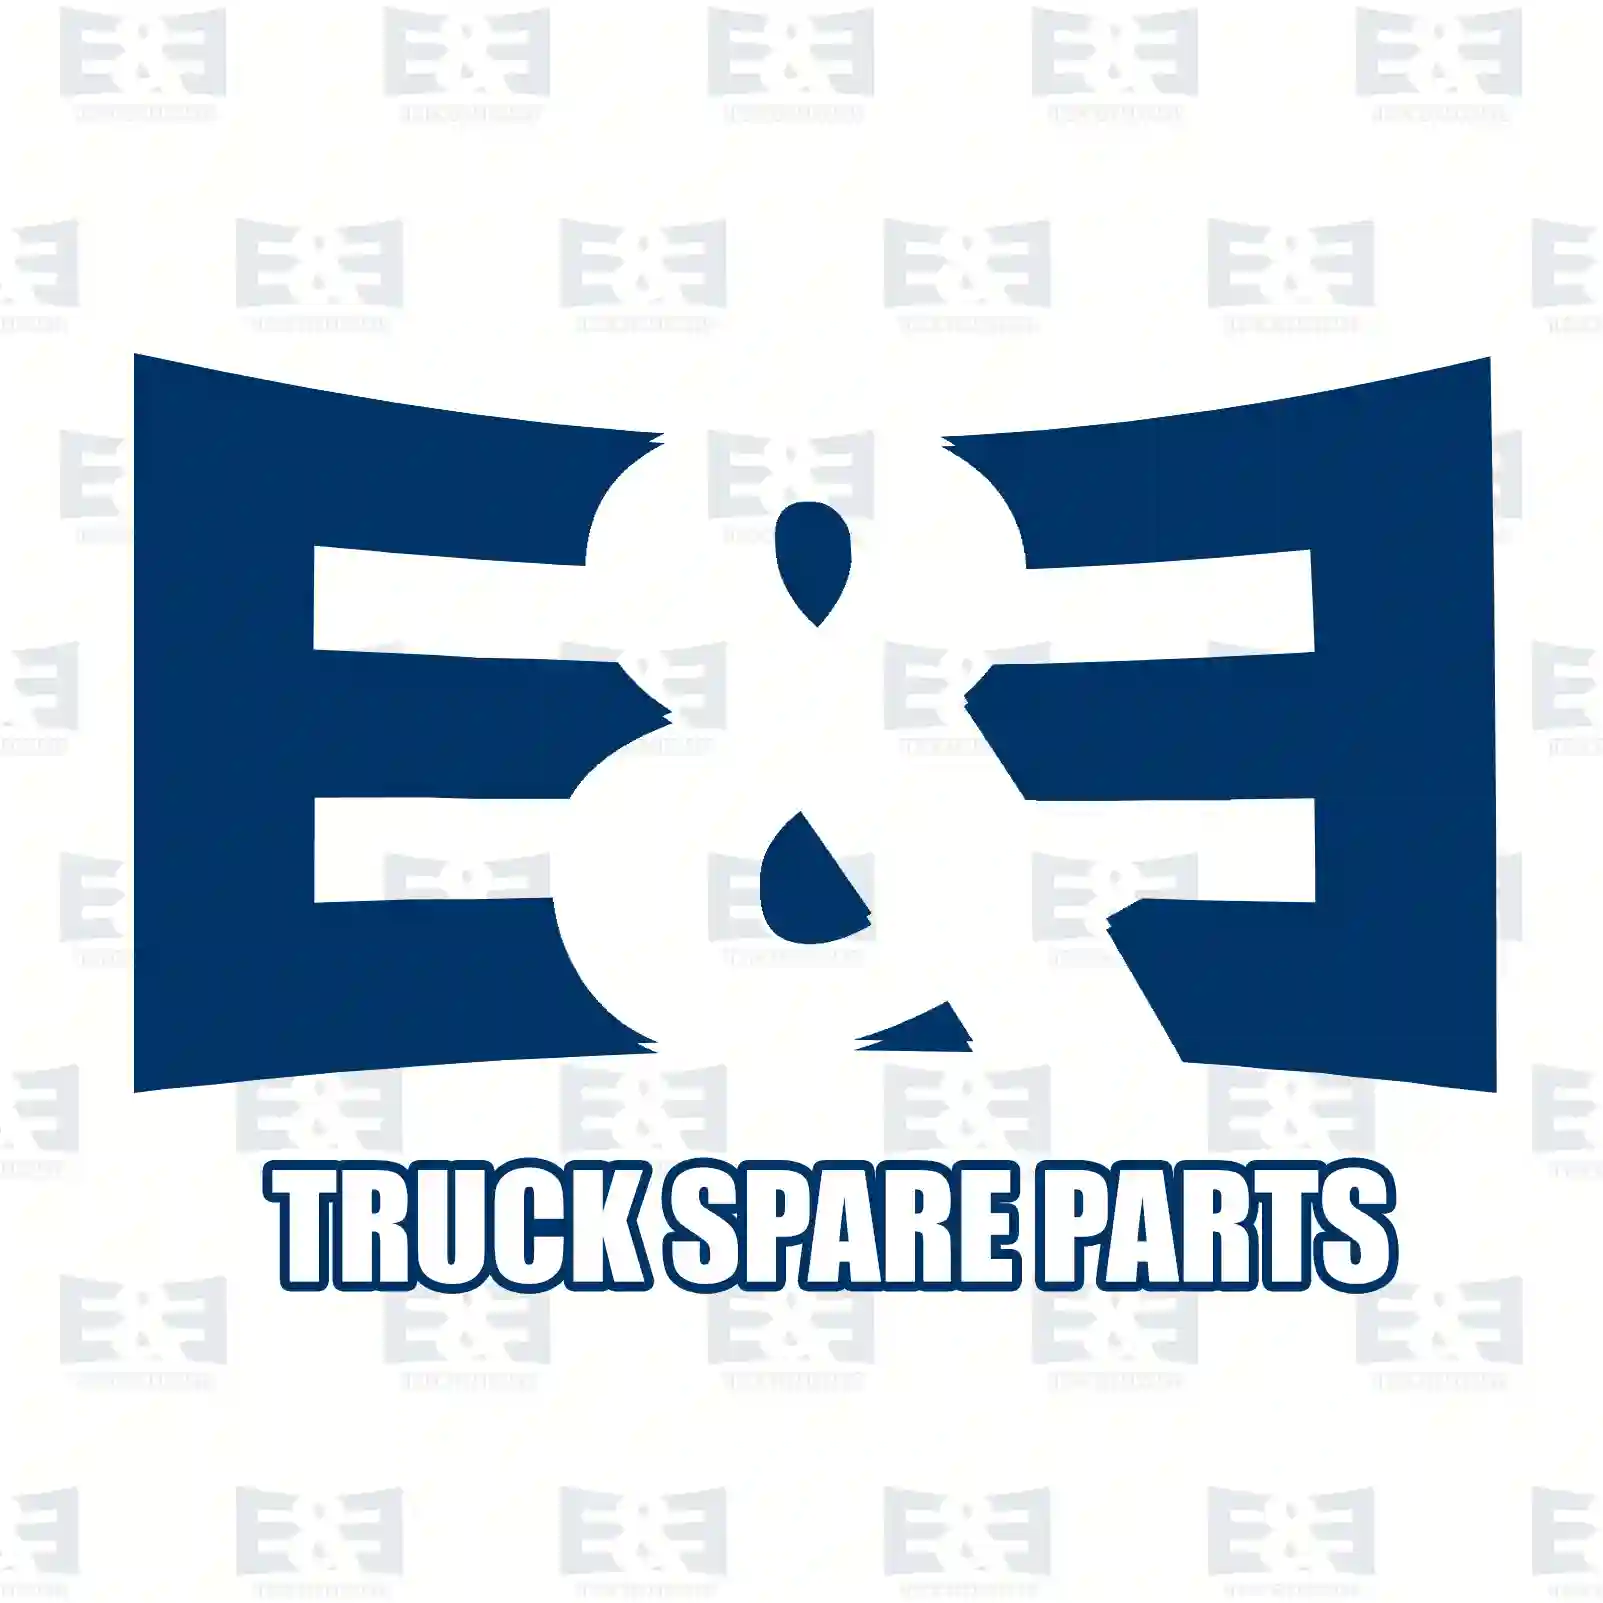 Compressor, 2E2296745, 51541007235, 51541007245, 51541007273 ||  2E2296745 E&E Truck Spare Parts | Truck Spare Parts, Auotomotive Spare Parts Compressor, 2E2296745, 51541007235, 51541007245, 51541007273 ||  2E2296745 E&E Truck Spare Parts | Truck Spare Parts, Auotomotive Spare Parts